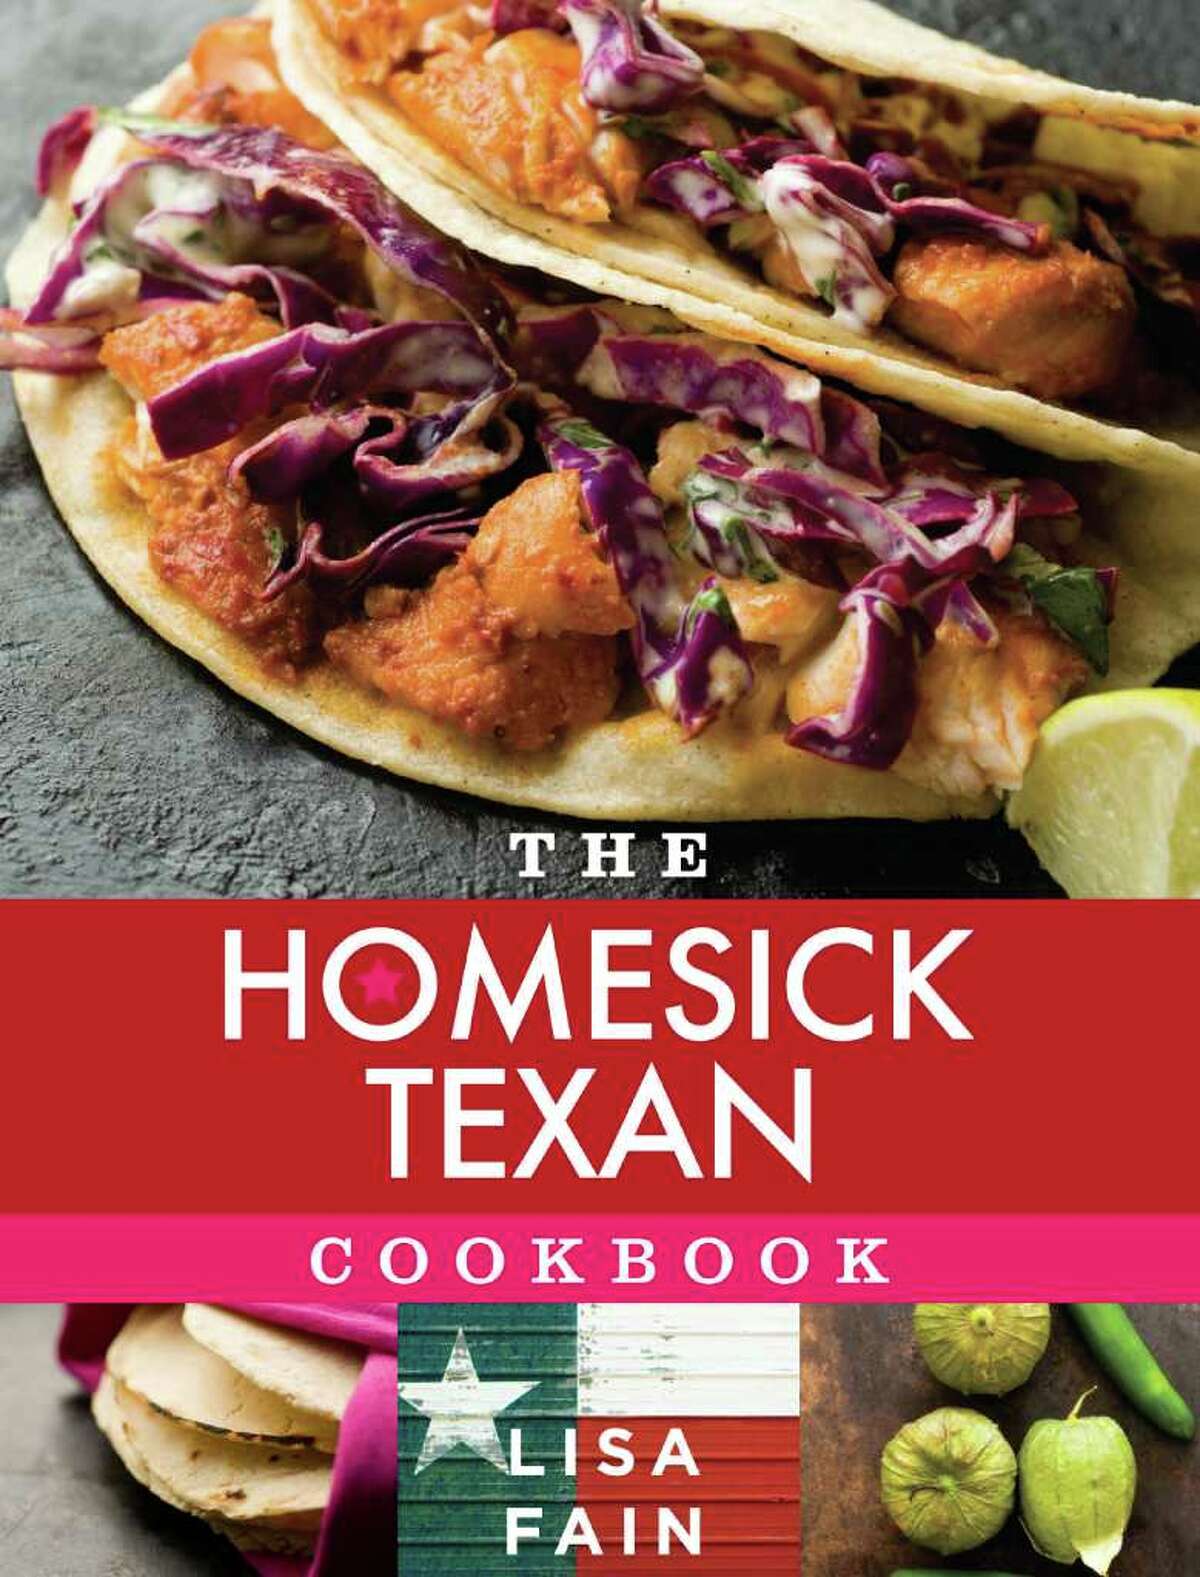 Cover: "The Homesick Texan Cookbook" by Lisa Fain